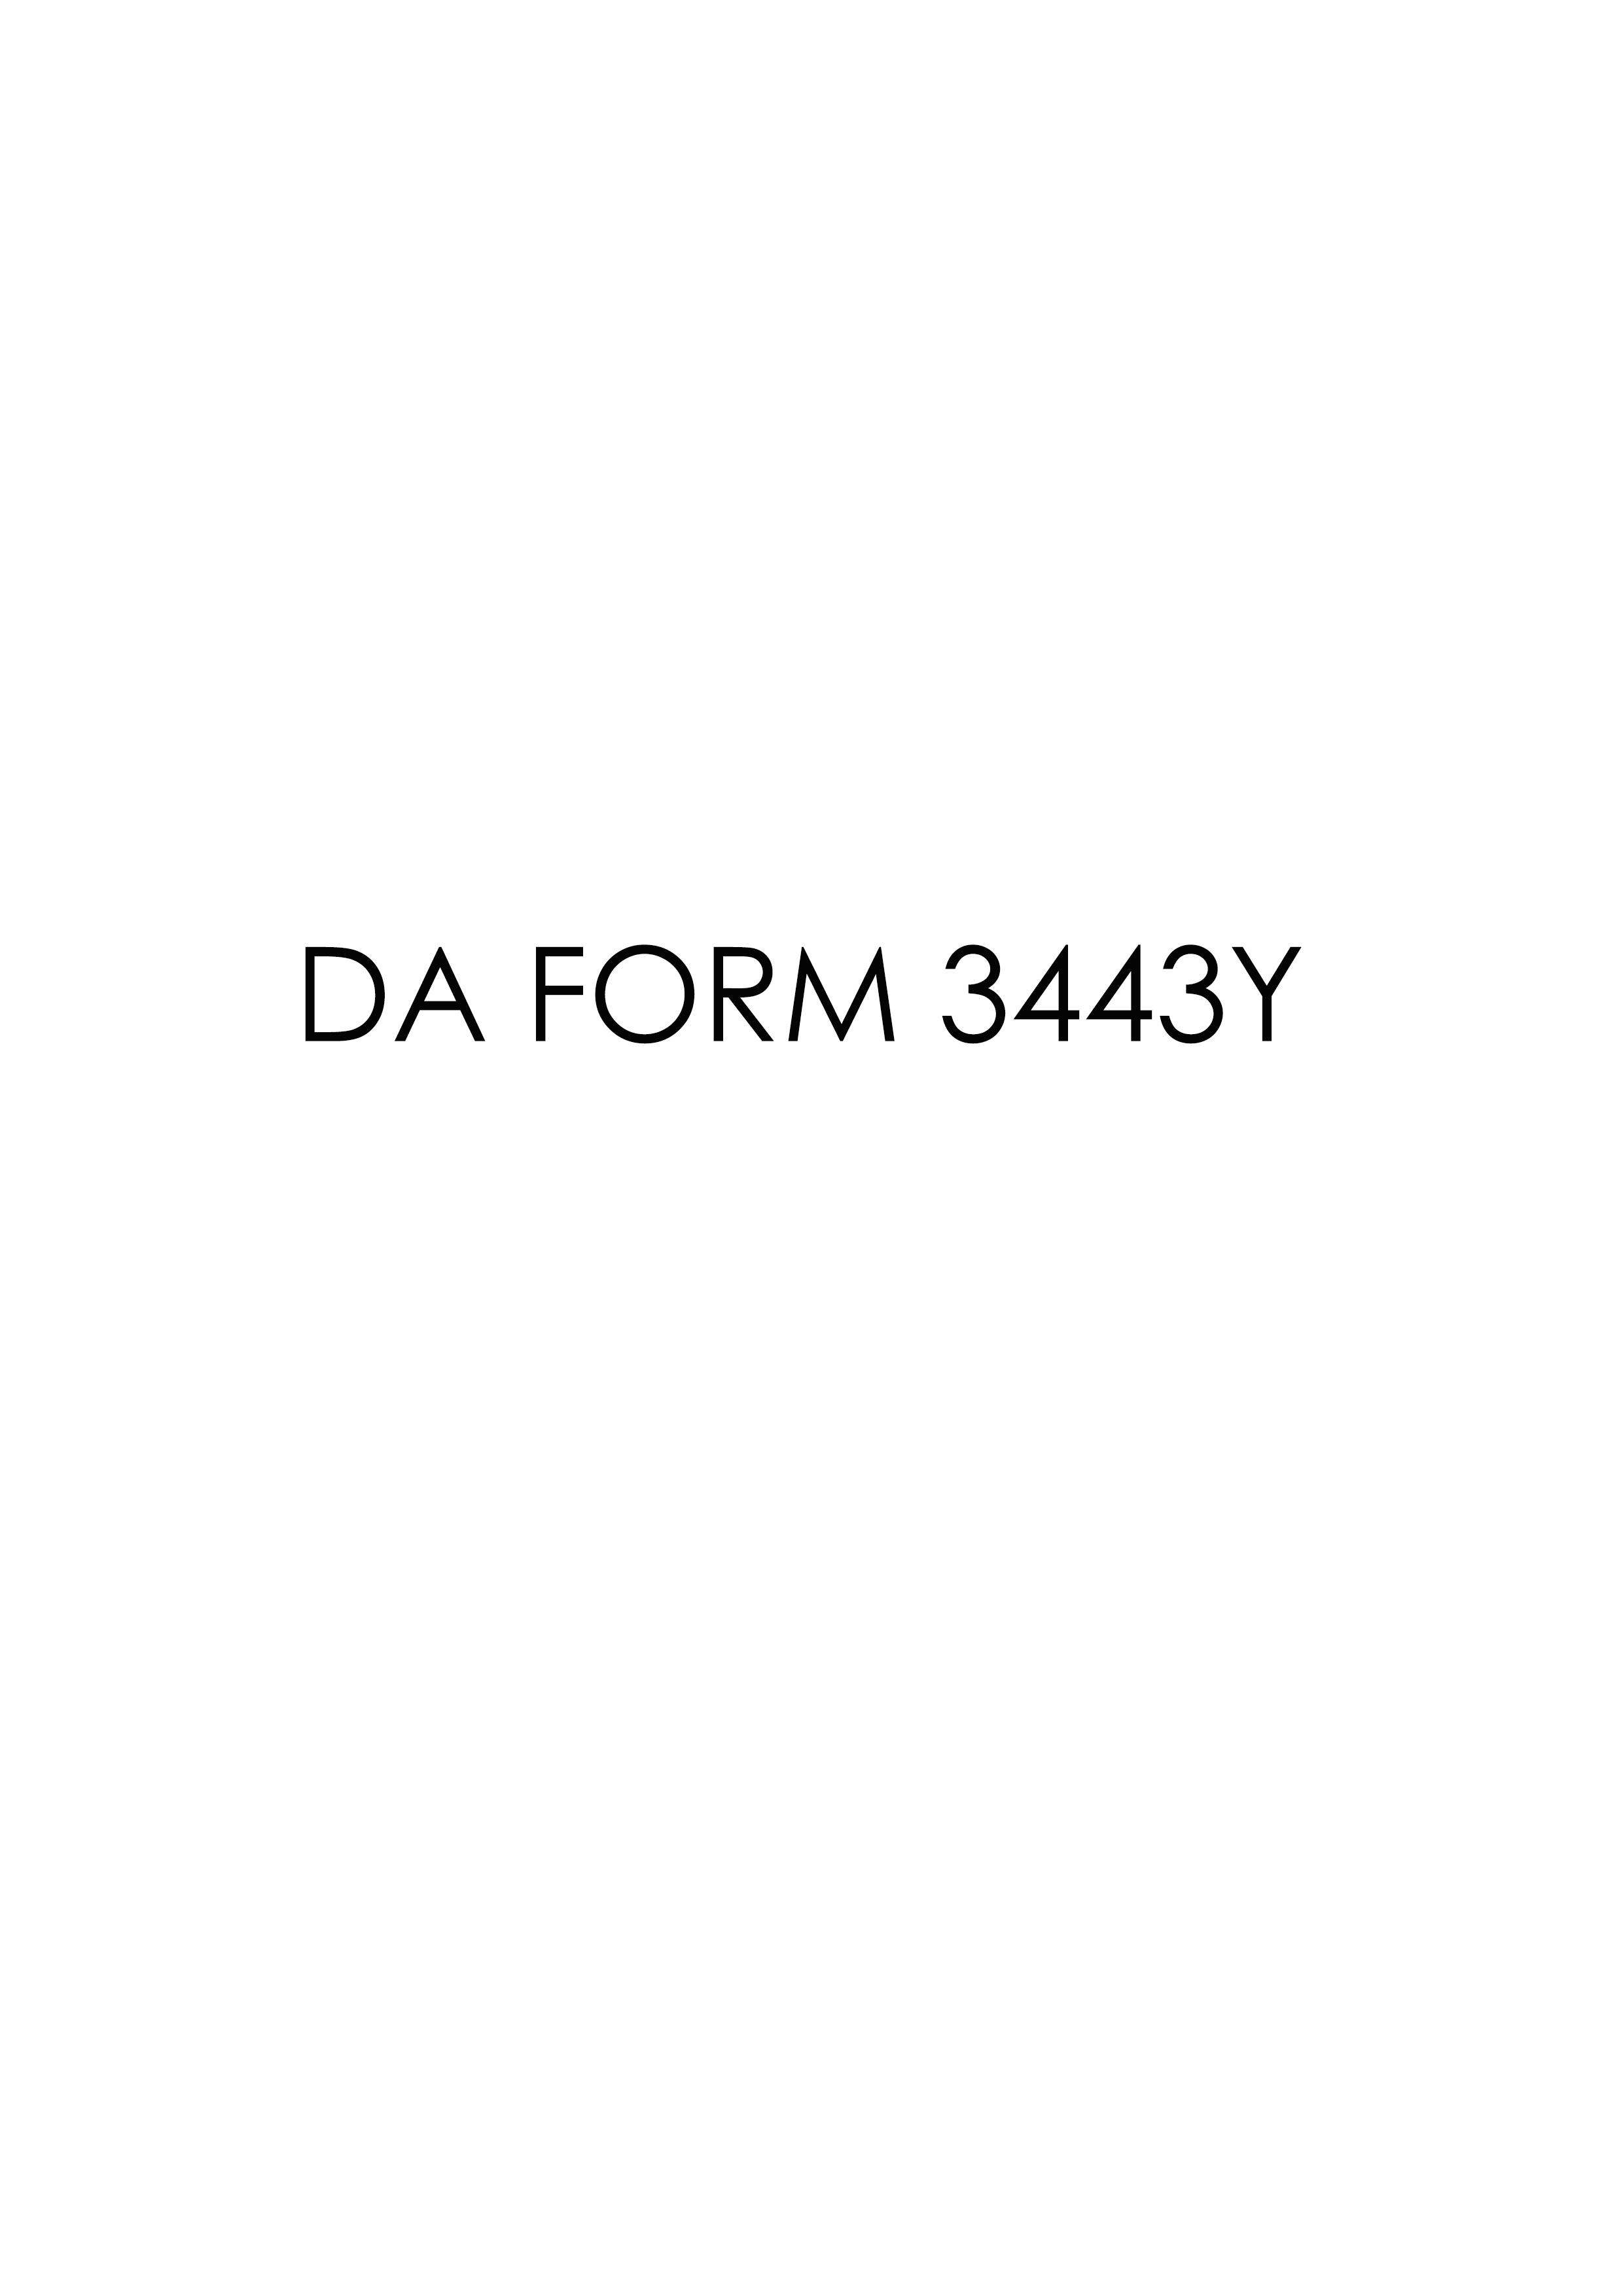 da Form 3443Y fillable